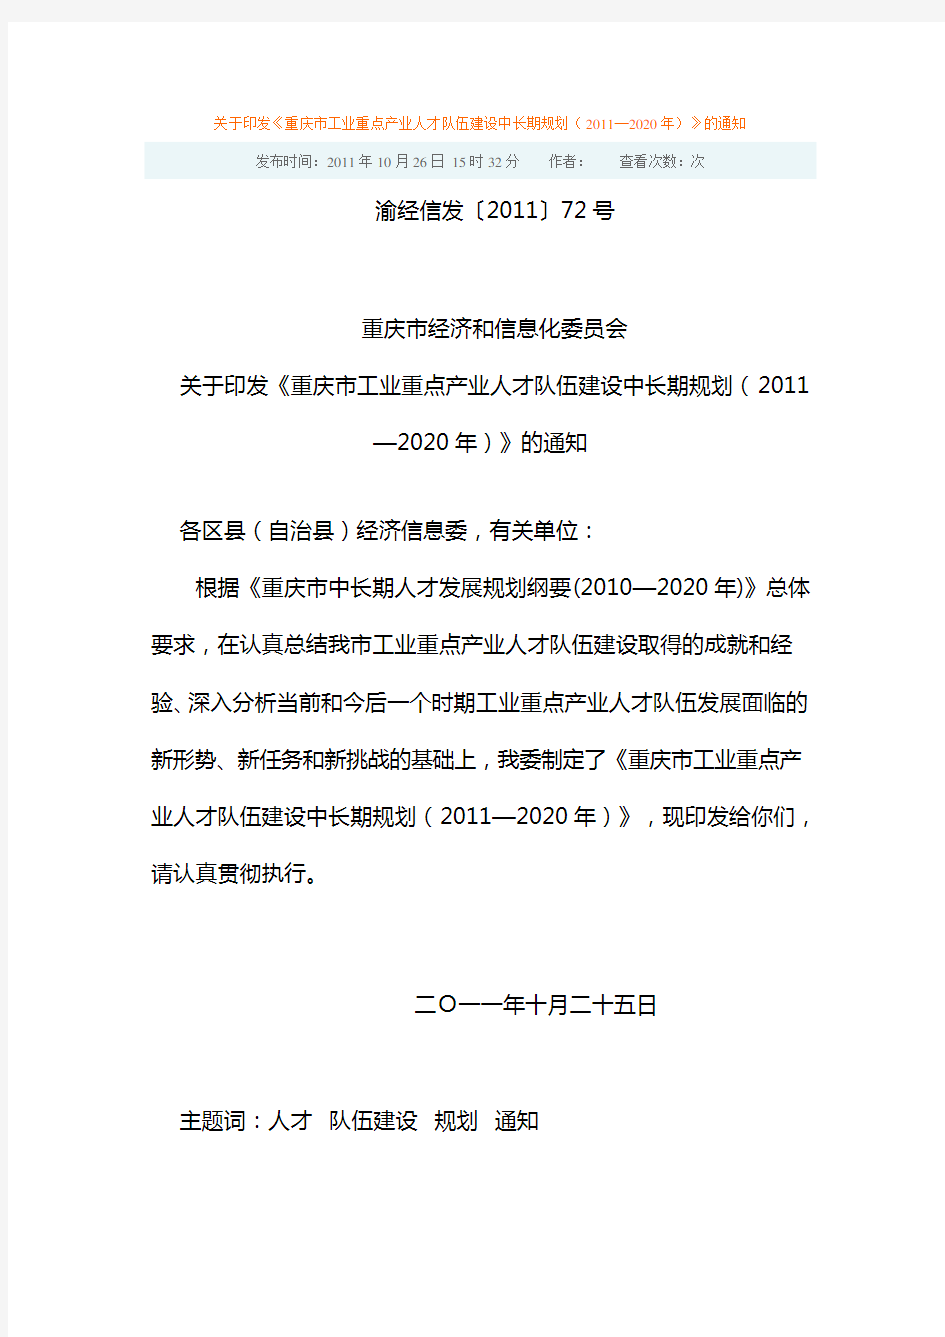 《重庆市工业重点产业人才队伍建设中长期规划(2011—2020年)》